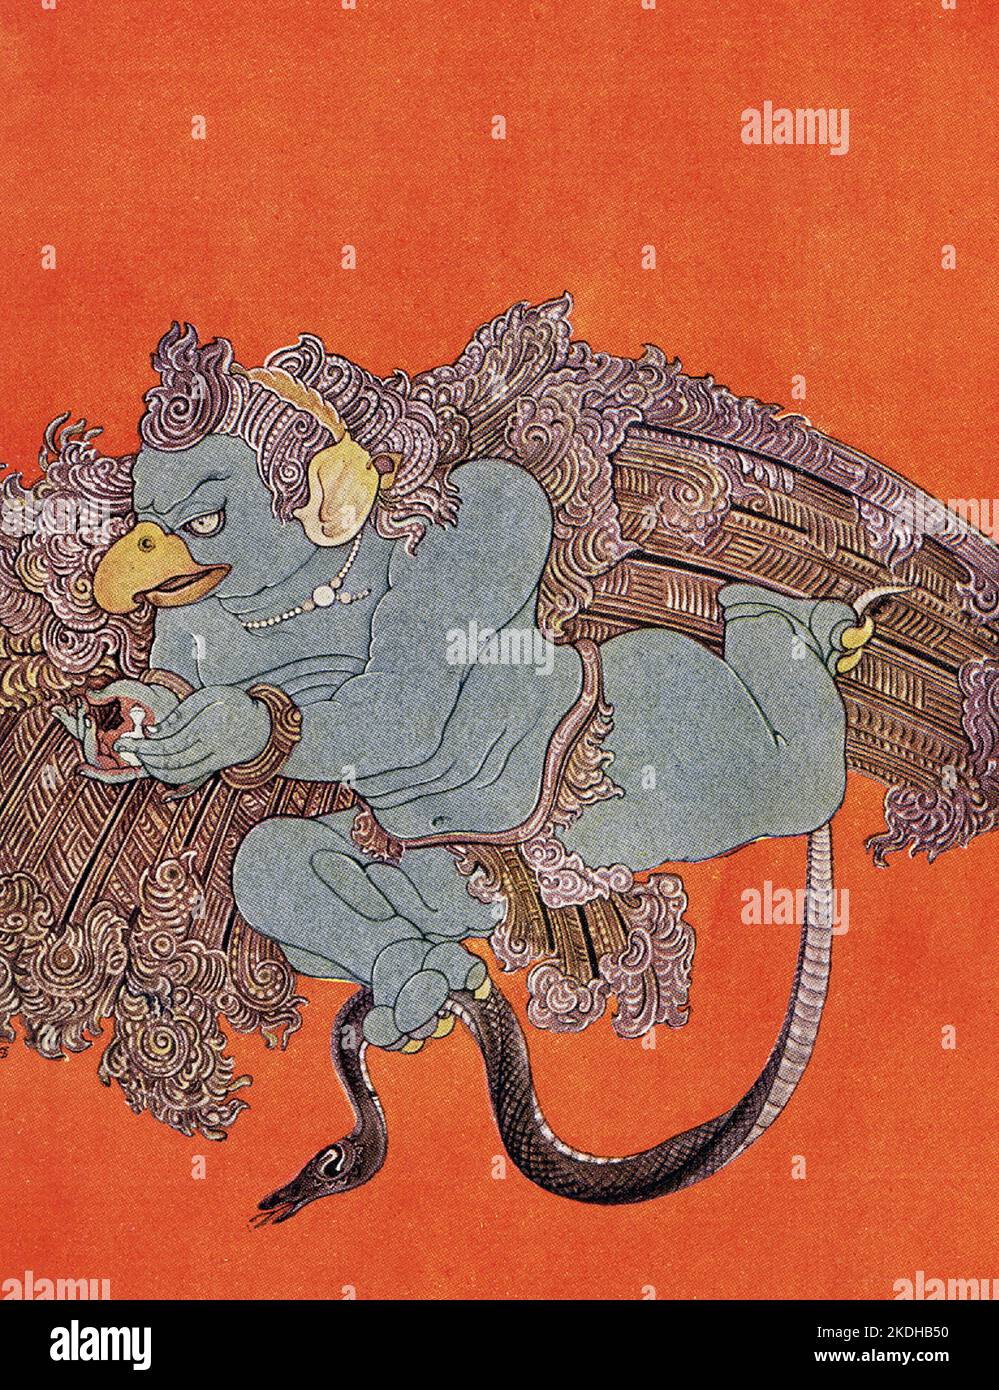 Questa stampa che mostra Garuda risale al 1913. Garuda, nella mitologia indù, l'uccello (un aquilone o un aquila) e il vahana (monte) del dio Vishnu. Nel Rigveda, il sole è paragonato ad un uccello nel suo volo attraverso il cielo, e un'aquila trasporta la pianta di soma ambrosiale dal cielo alla terra. Il racconto mitologico della nascita di Garuda nel Mahabharata lo identifica come il fratello minore di Aruna, il carro del dio del sole, Surya Foto Stock